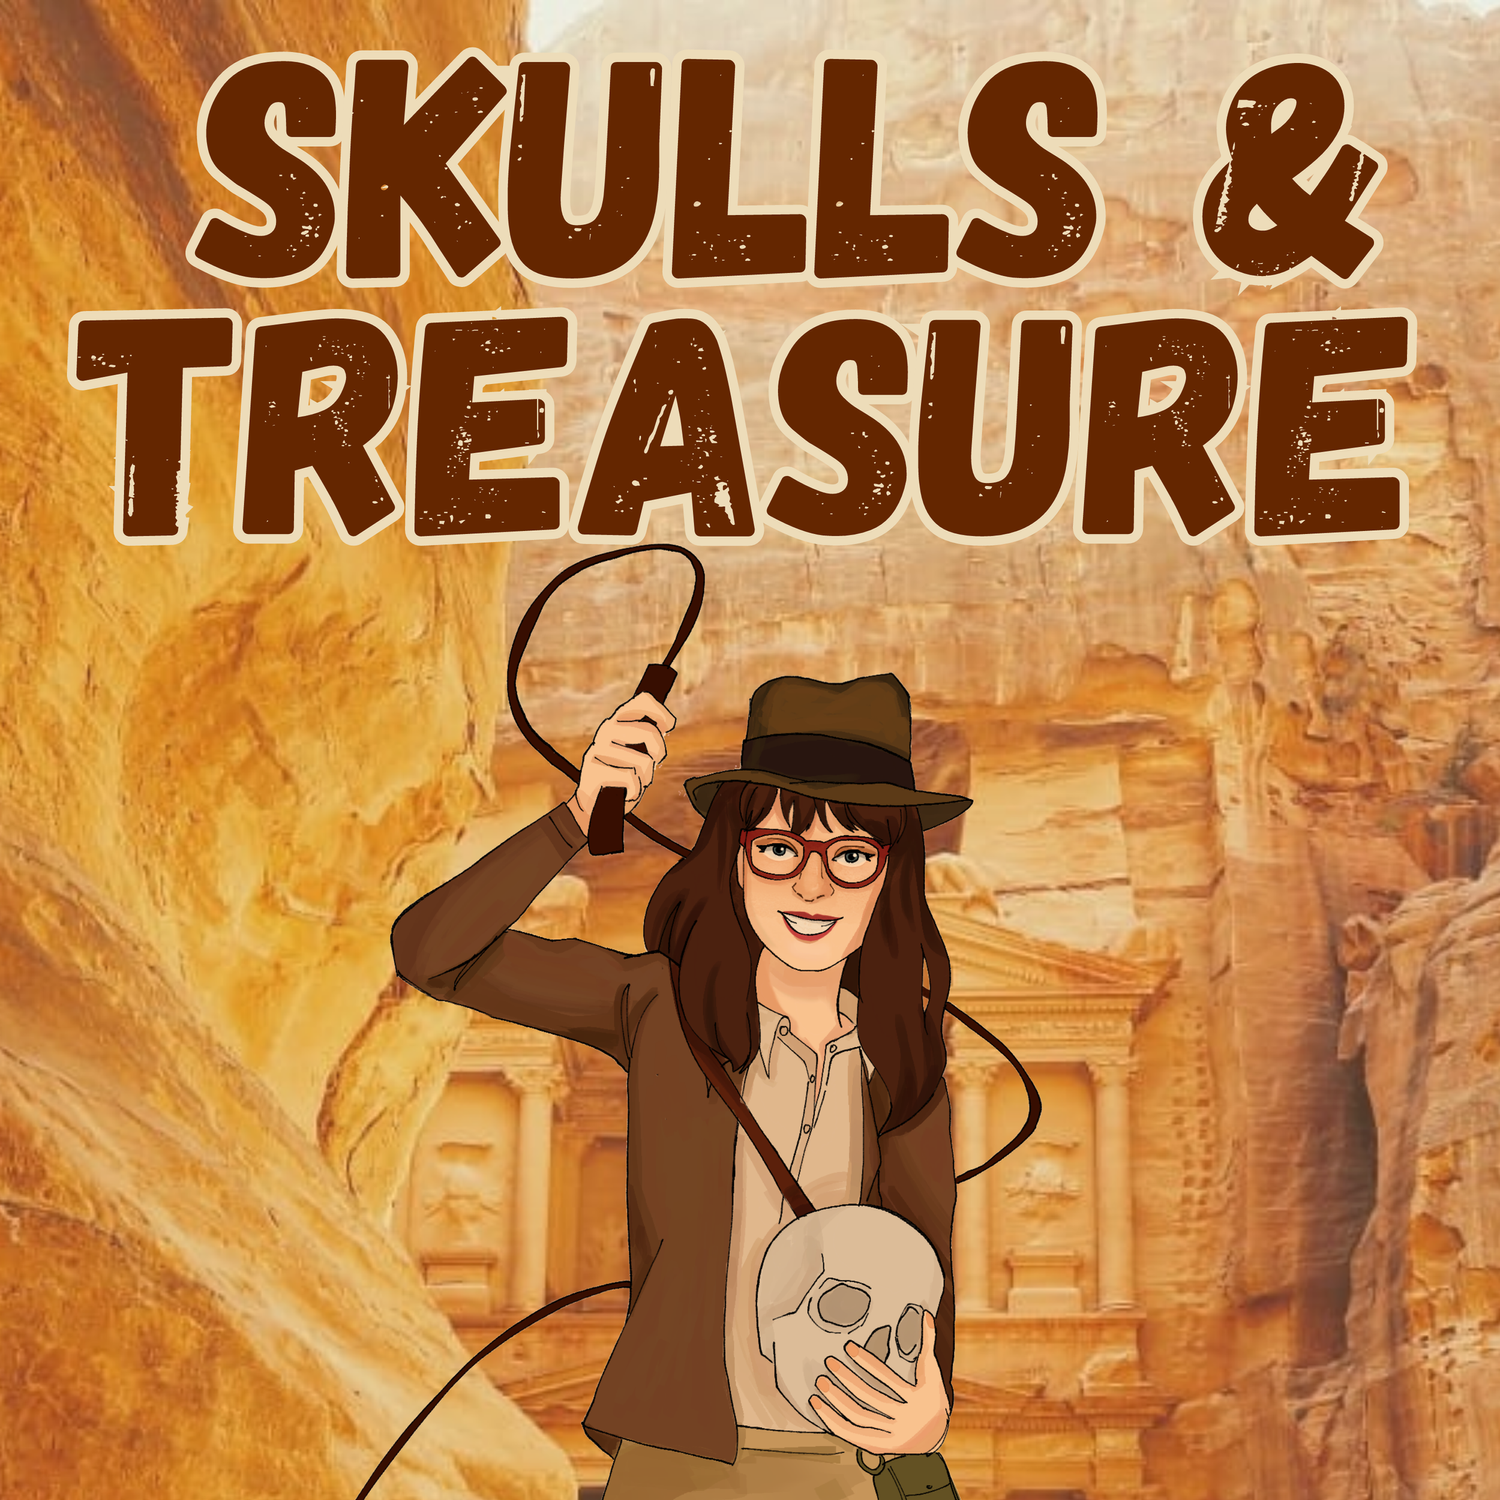 Skulls and Treasure